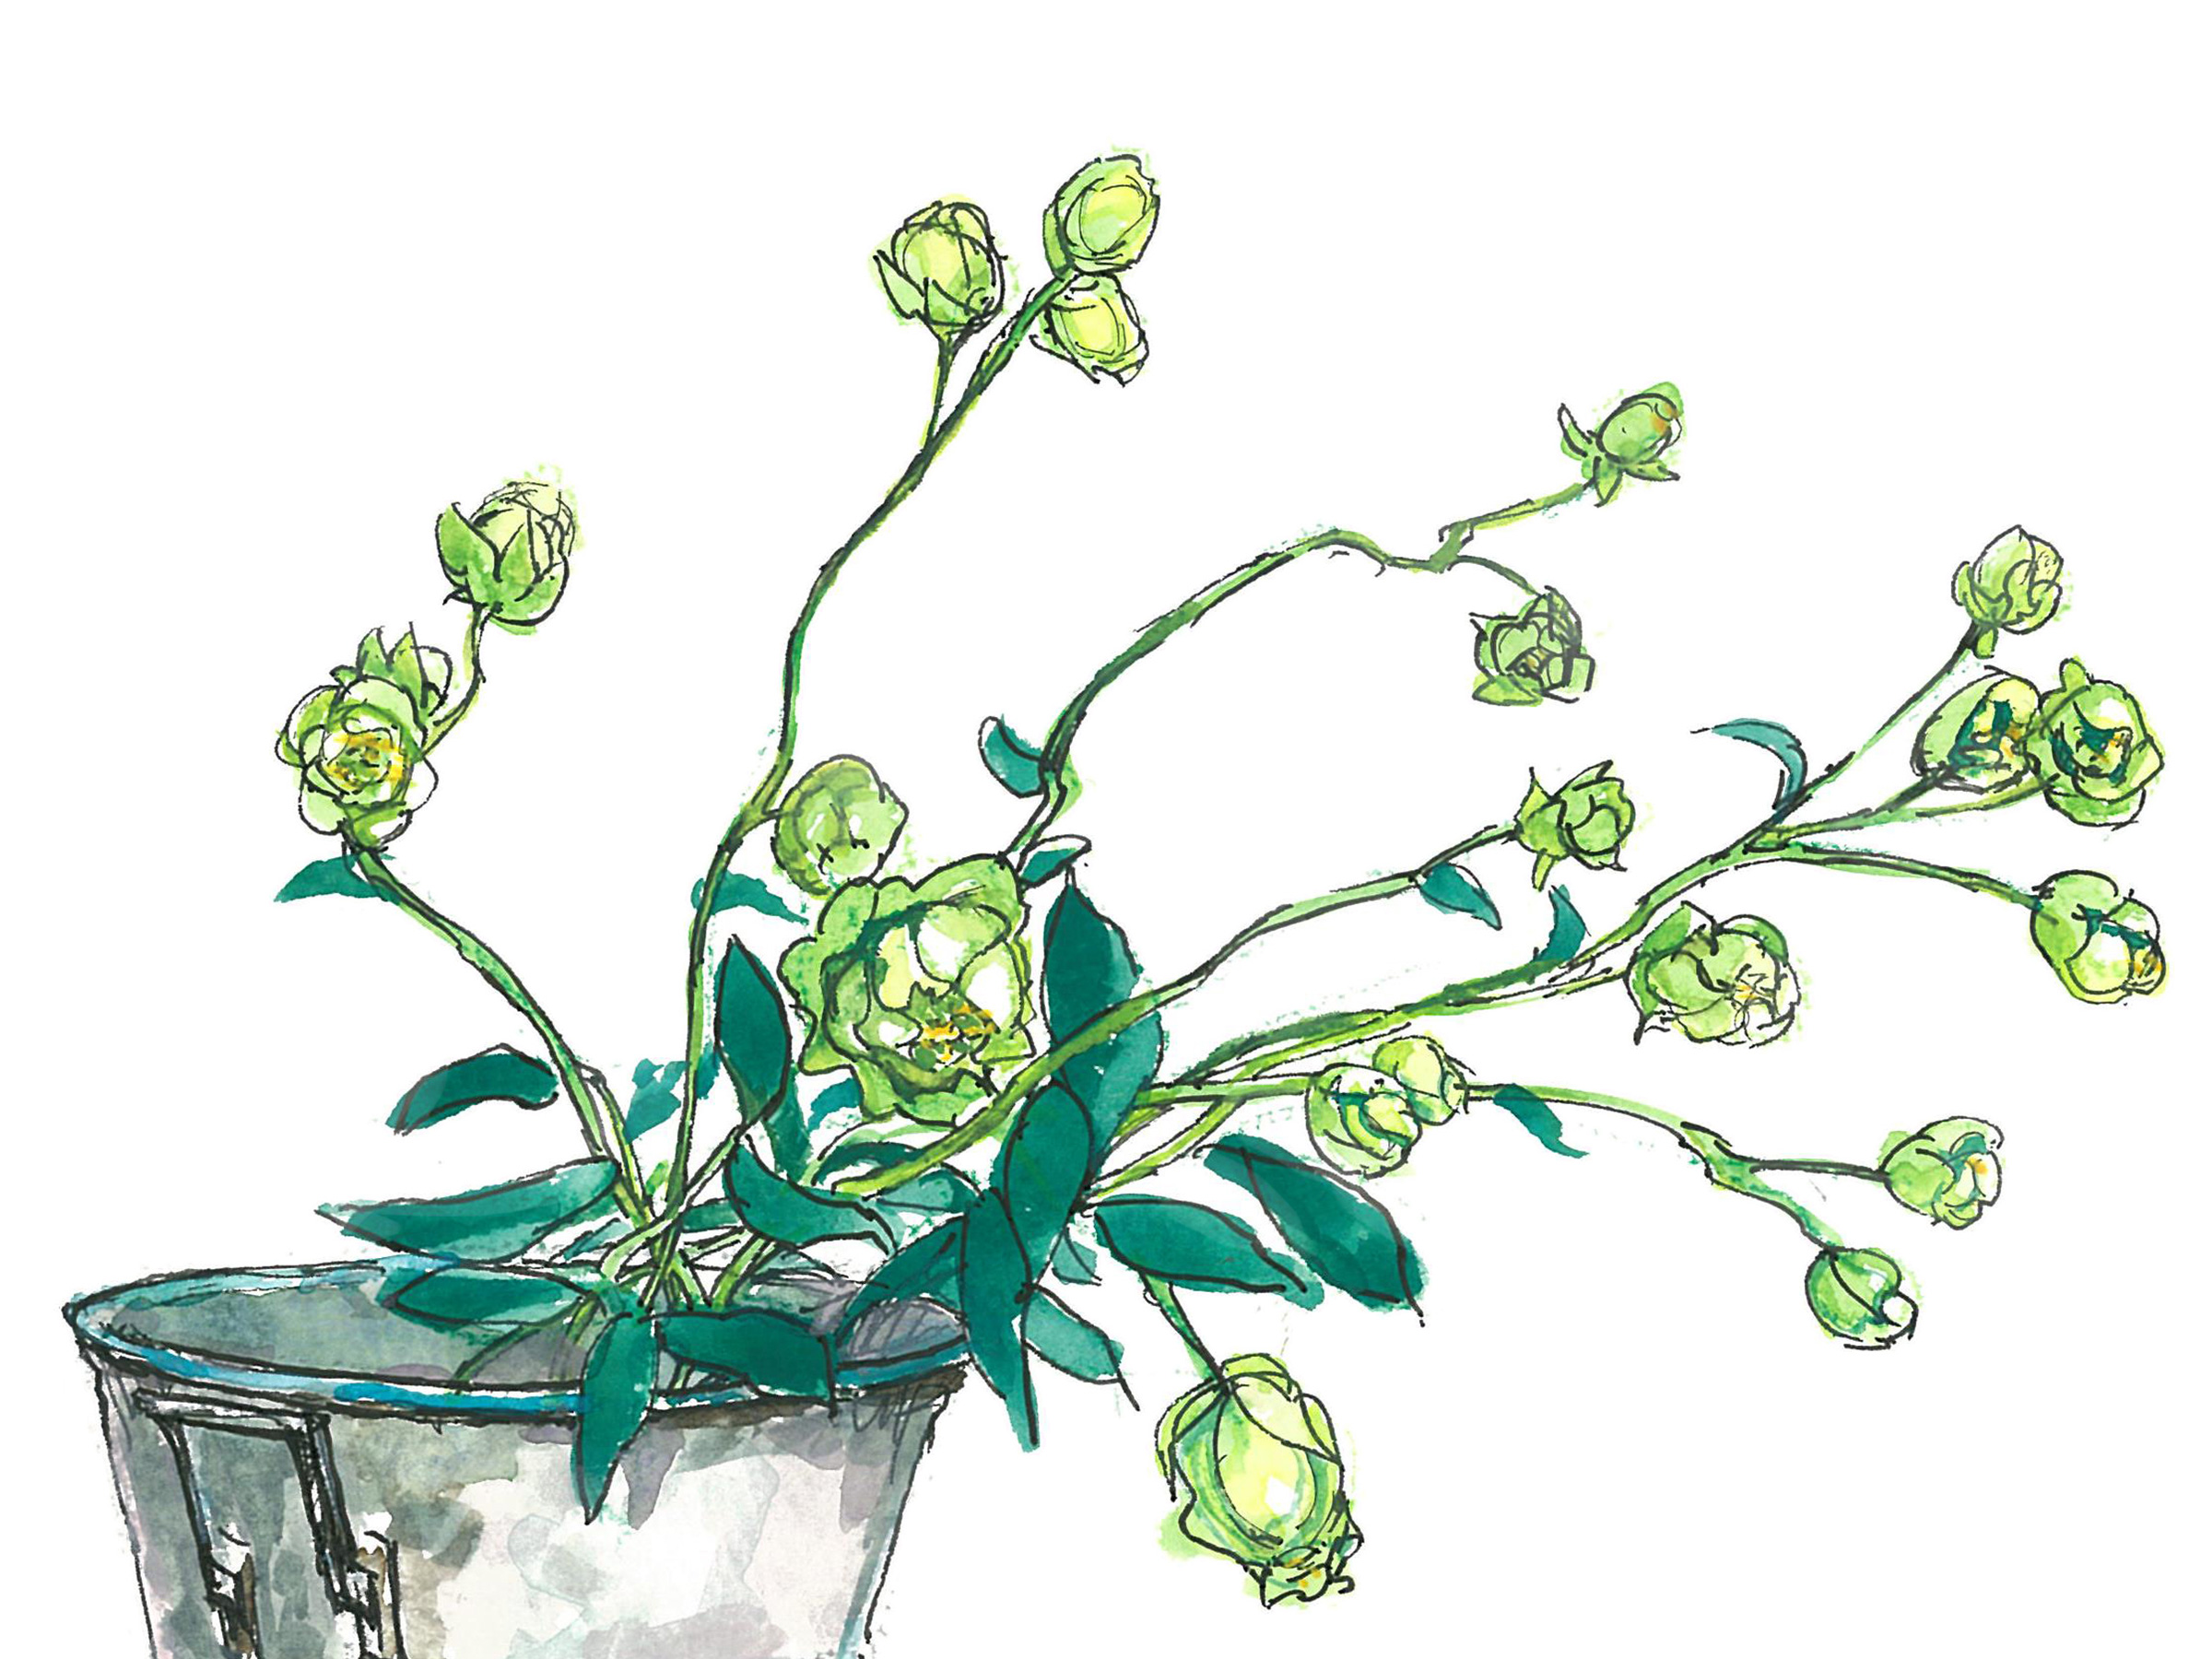 【7月15日の花】バラ「エクレール」 小さくて可愛い緑色のスプレーバラ